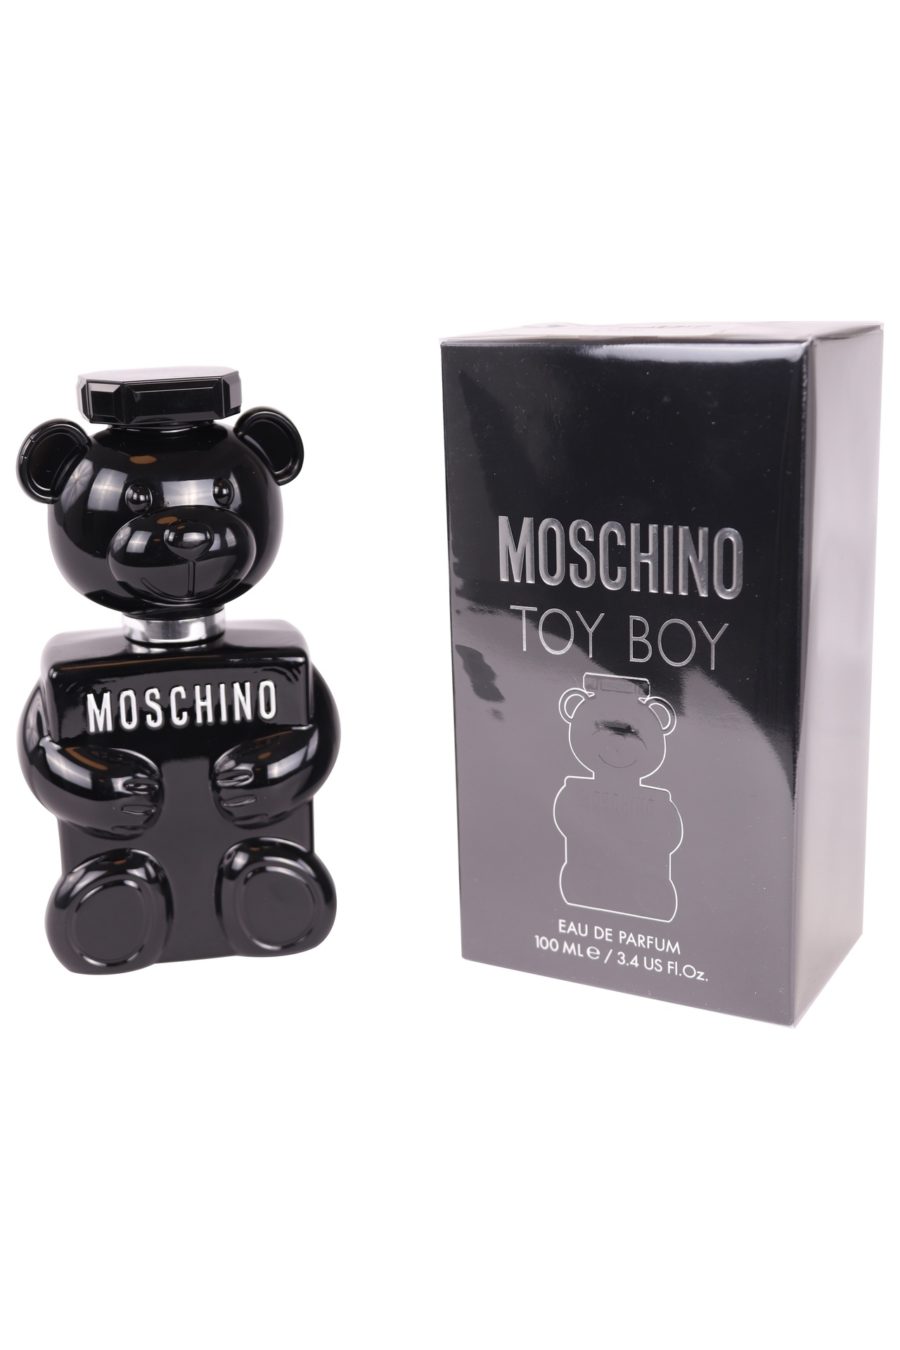 Moschino Toy Boy eau de parfum 100 ml - 83d9791b32c38261bd122c8214eb306ad3883193